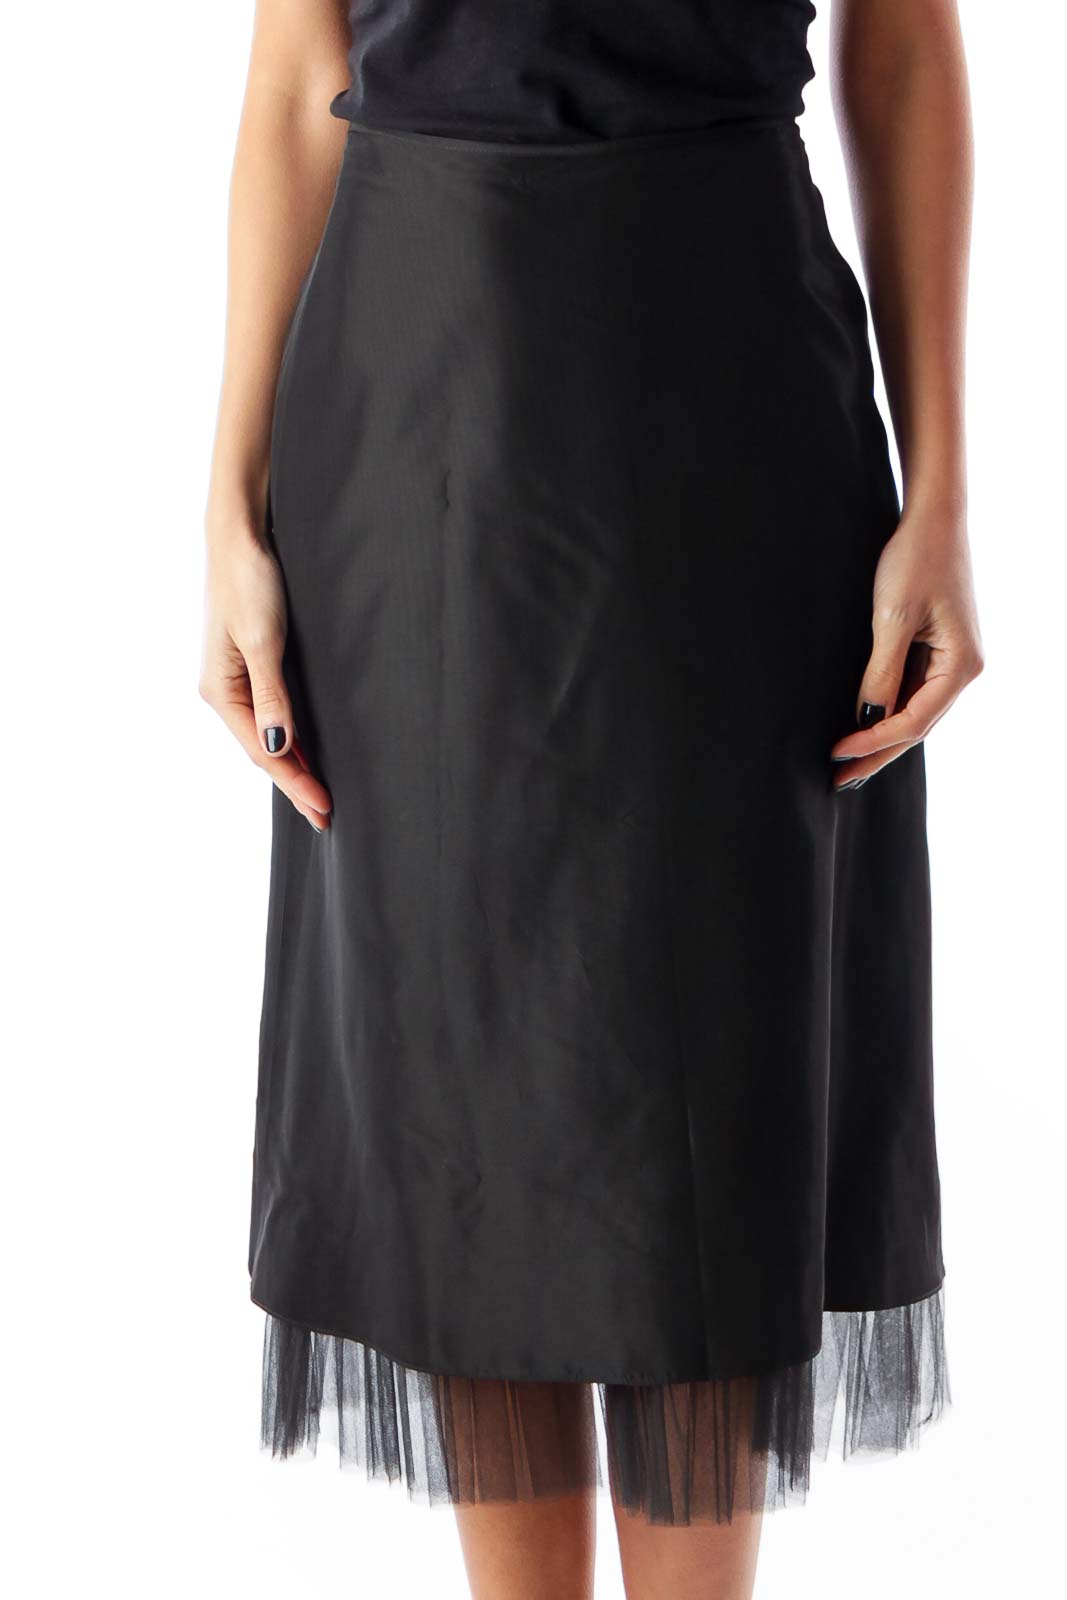 Black Tule Detail Skirt Front